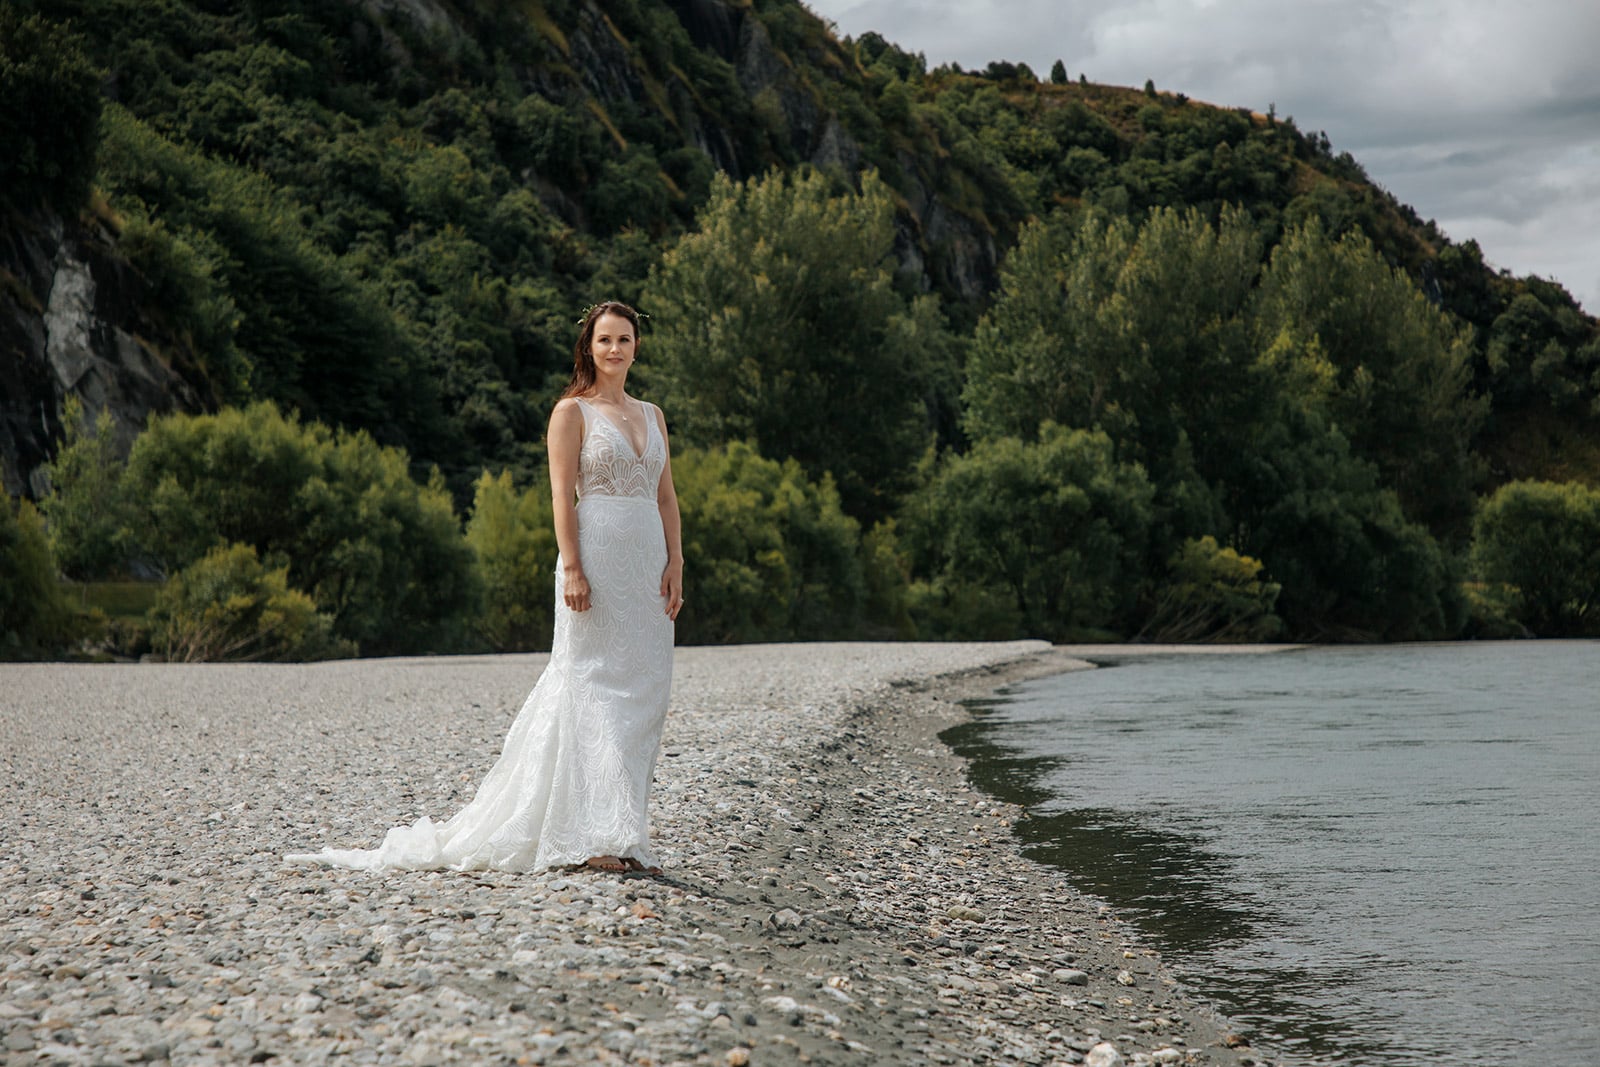 Heli Mountain Wedding in Queenstown New Zealand